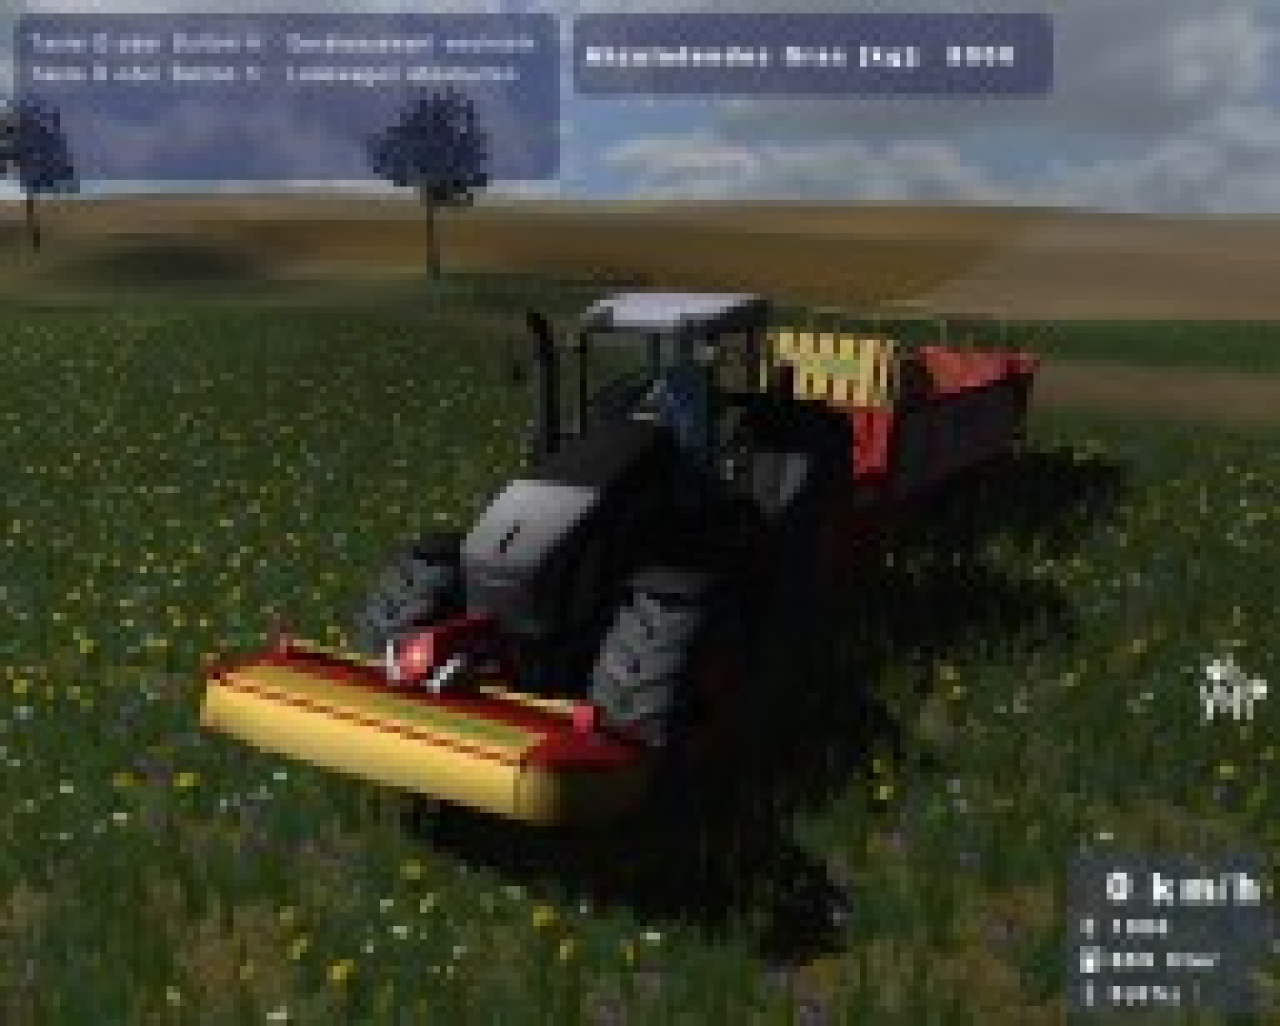 Farming simulator gold. Farming Simulator 2009 Gold Edition. Traktor Zetor Simulator 2009. Фермер 2009 ключ. Фермер симулятор 2009 системные требования.